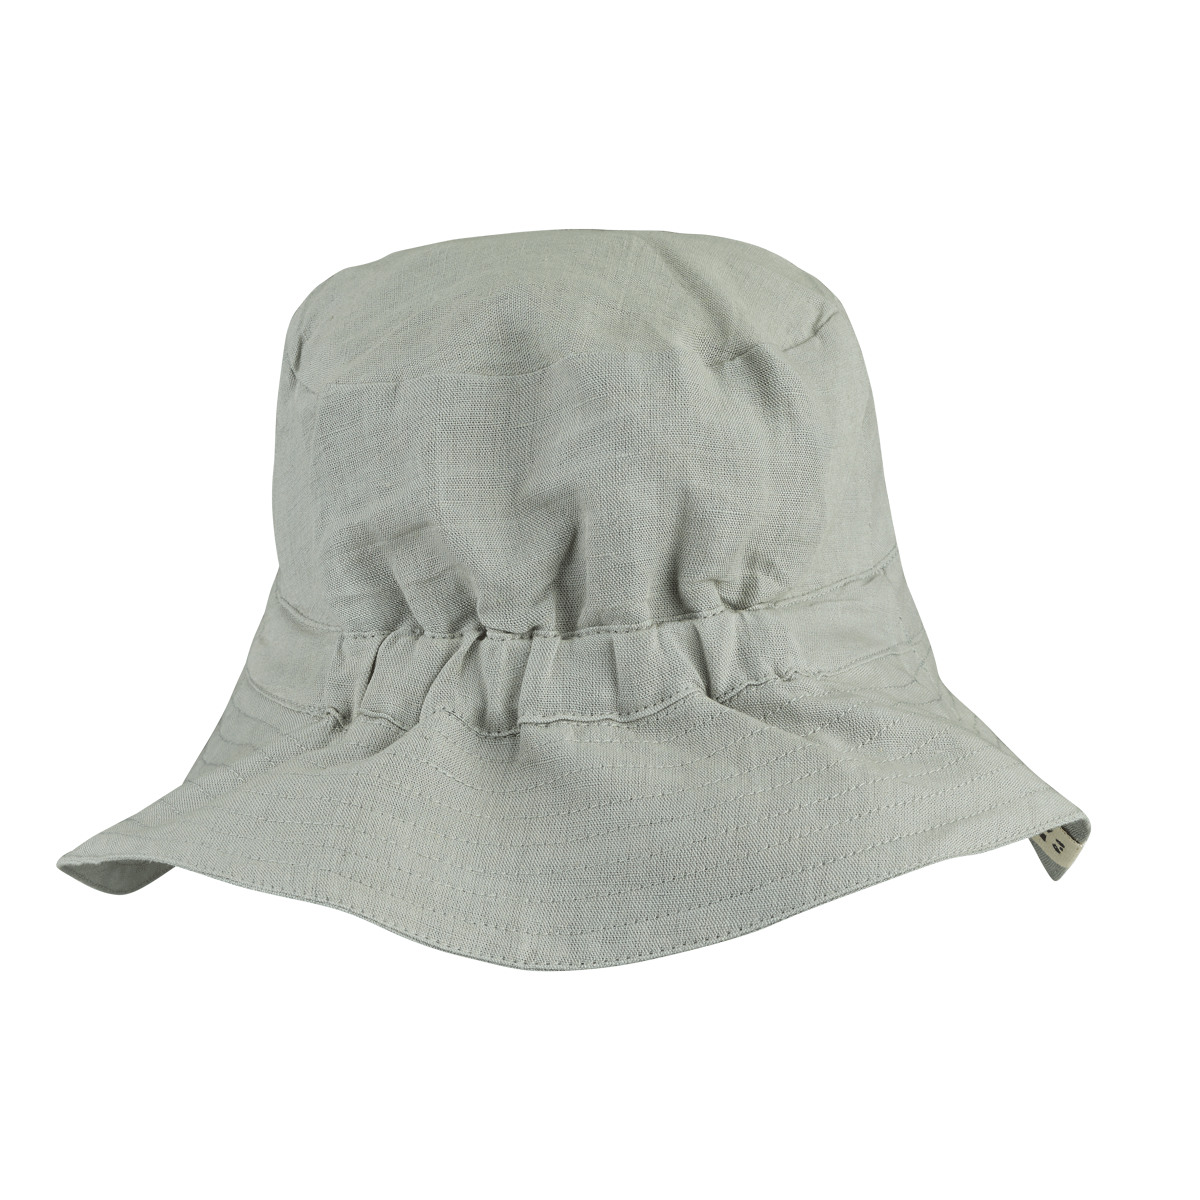 Liewood Delta bucket hat - Dove blue sunhat organic cotton linen